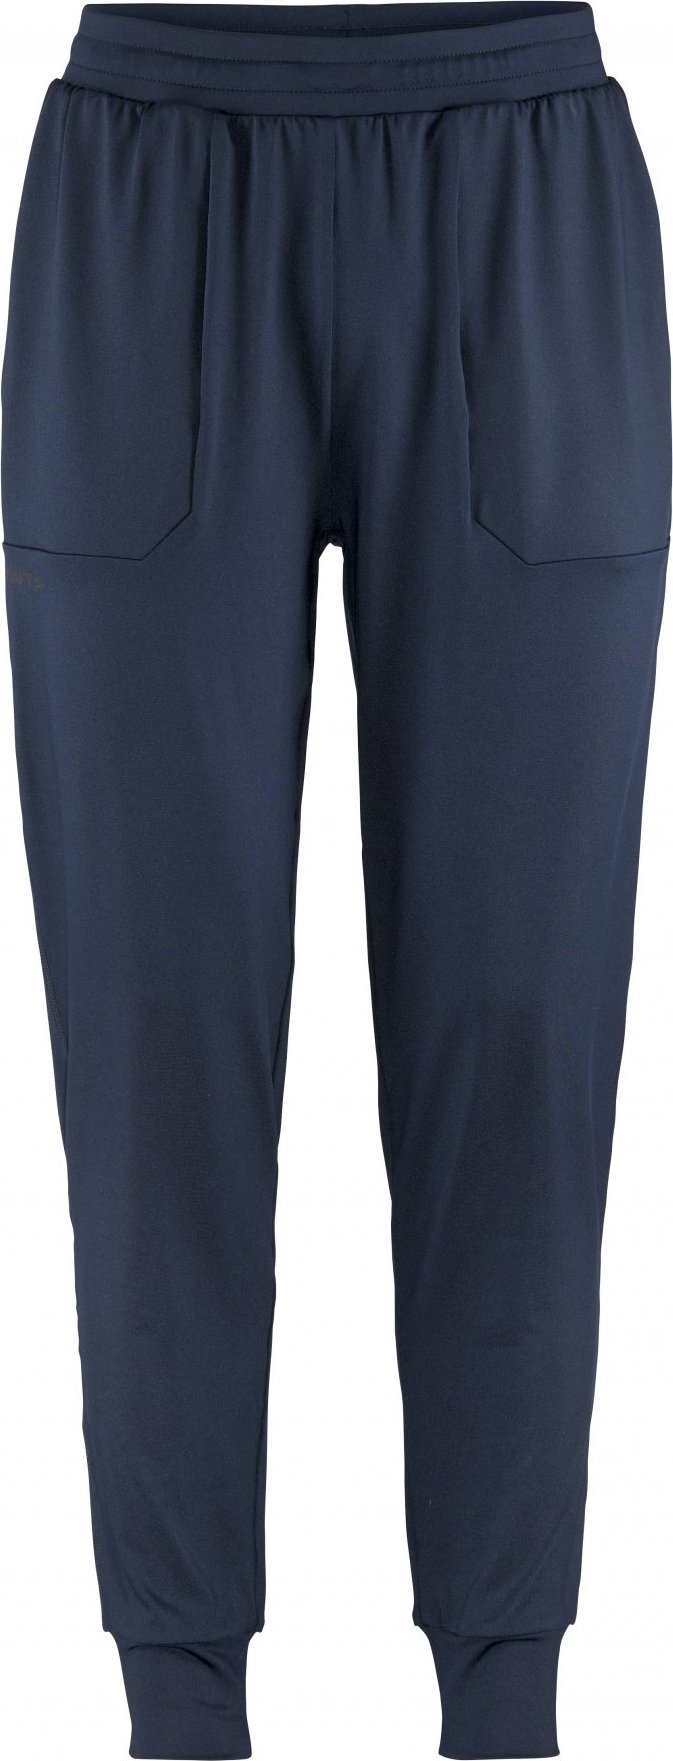 Pánské sportovní kalhoty CRAFT ADV Tone Jersey - modrá Velikost: S